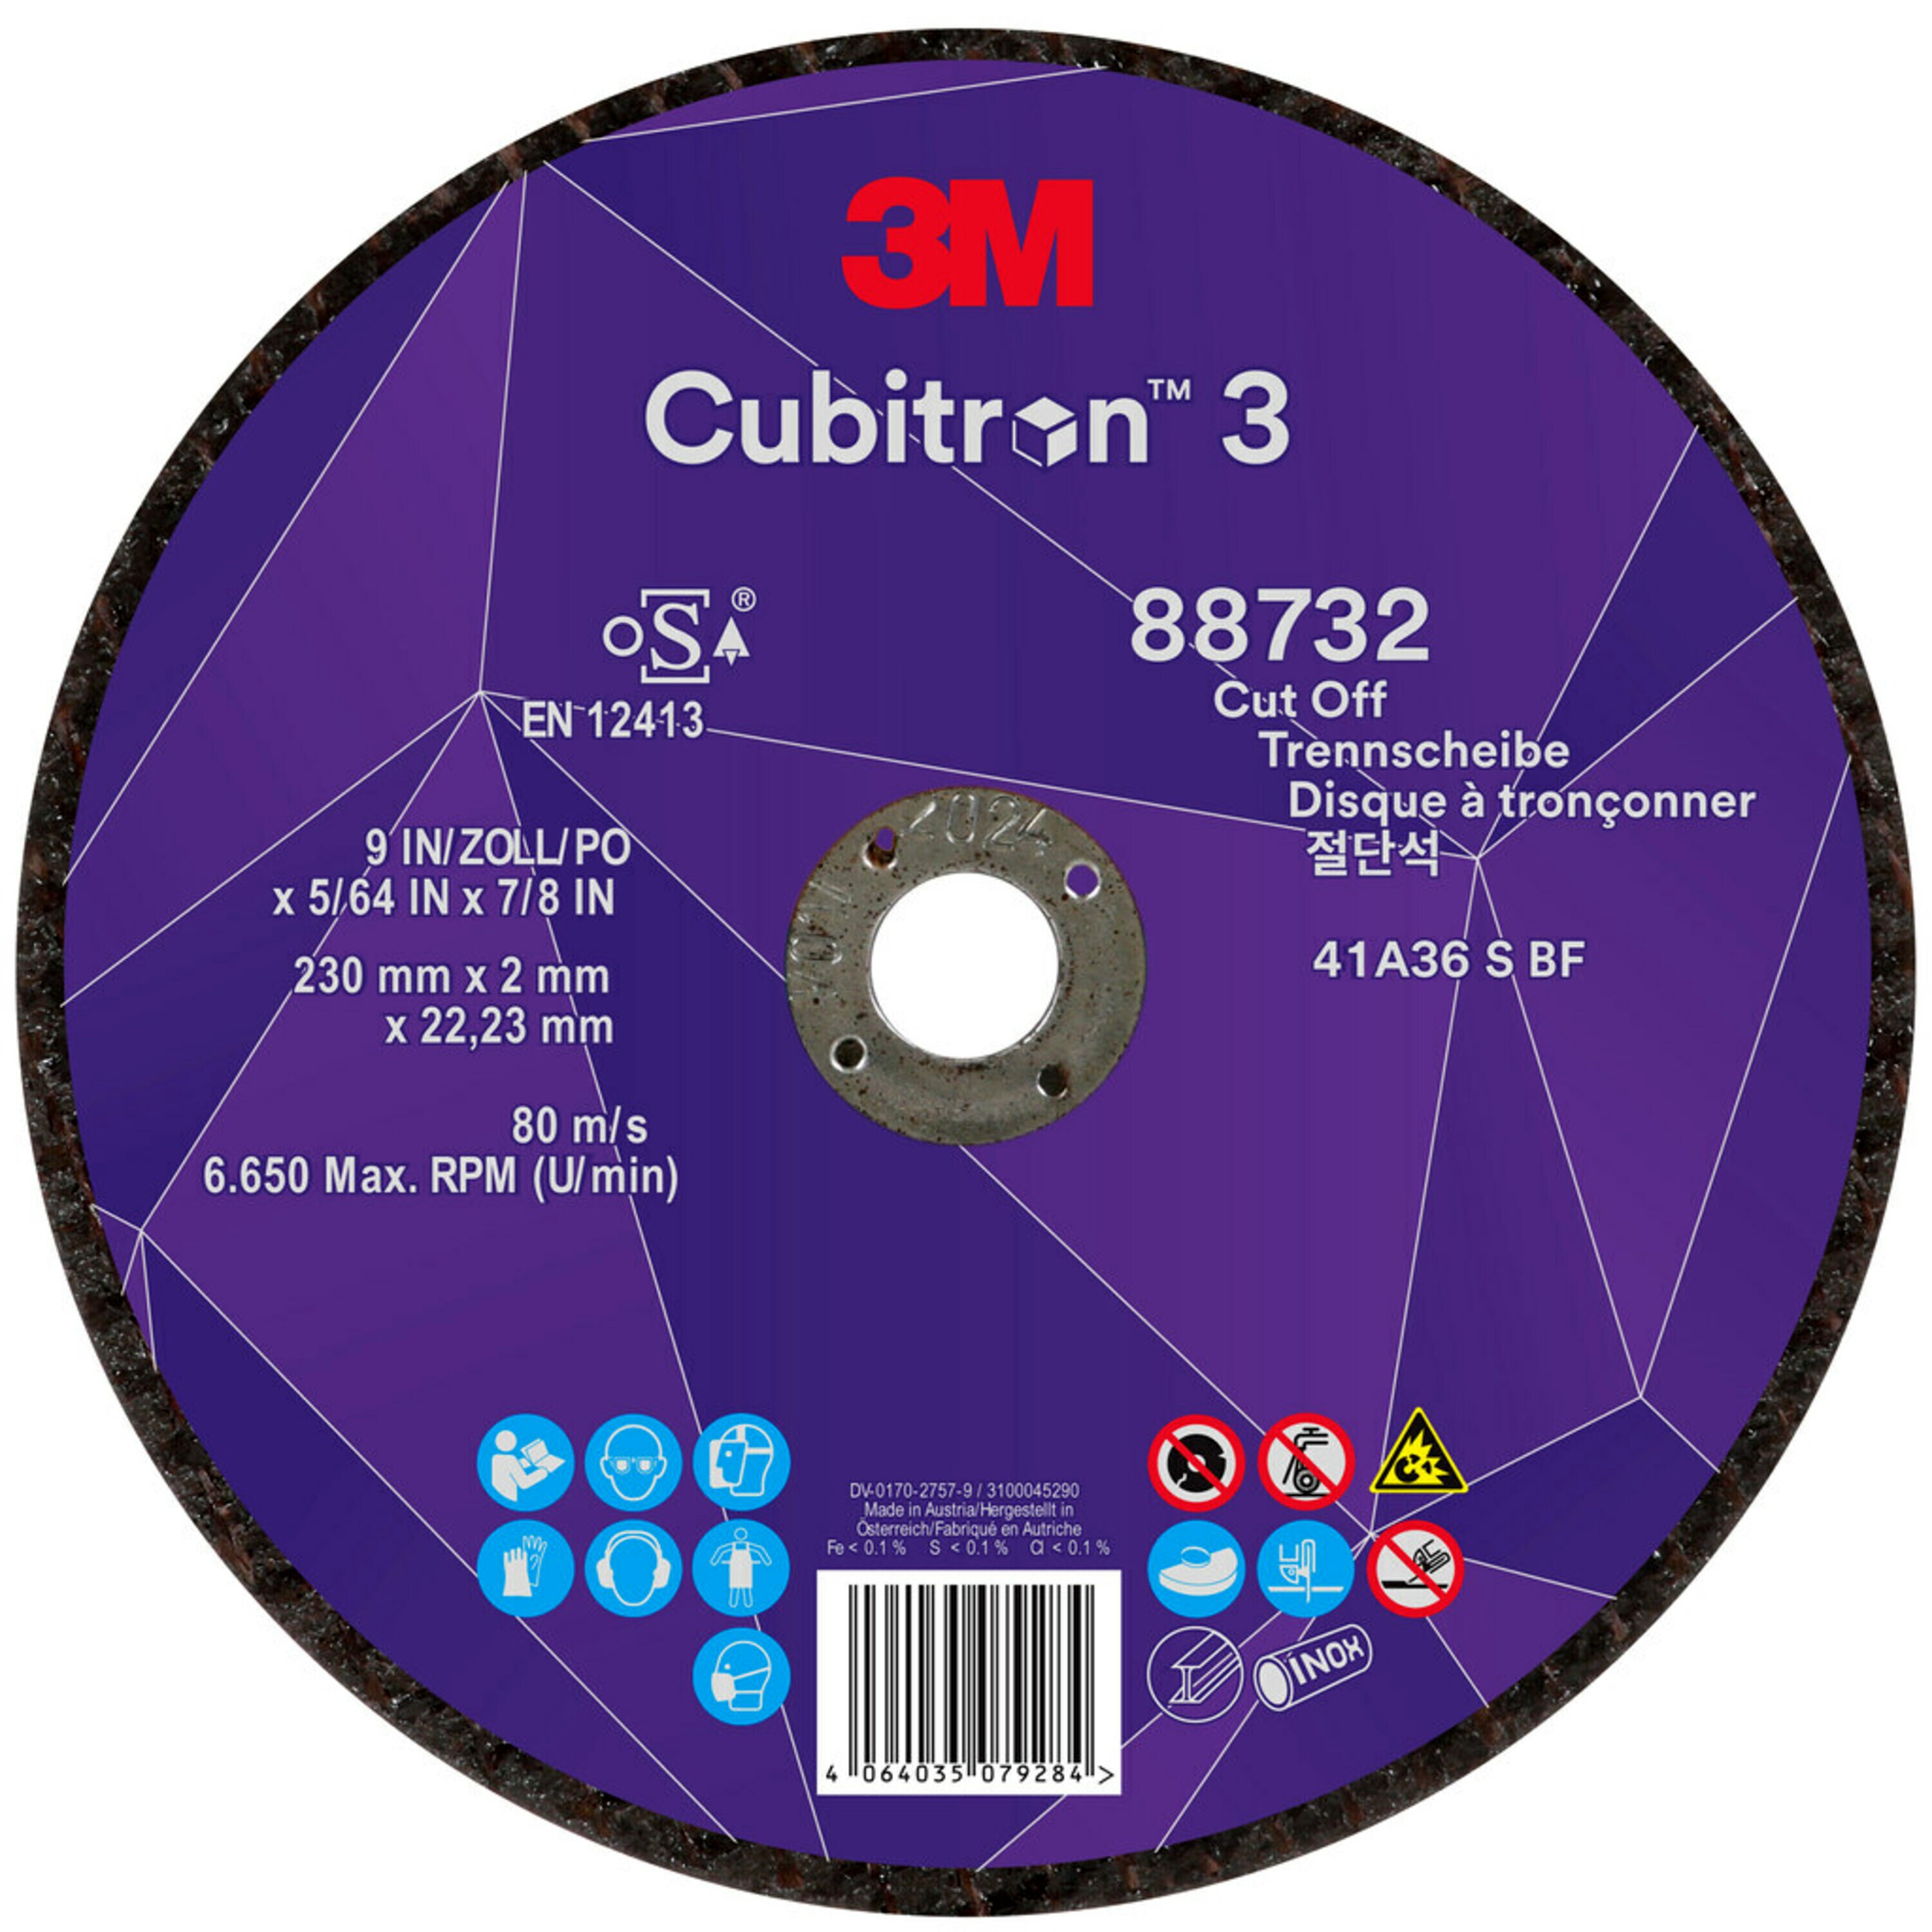 3M Cubitron 3 disco da taglio, 230 mm, 2 mm, 22,23 mm, 36 , tipo 41 #88732